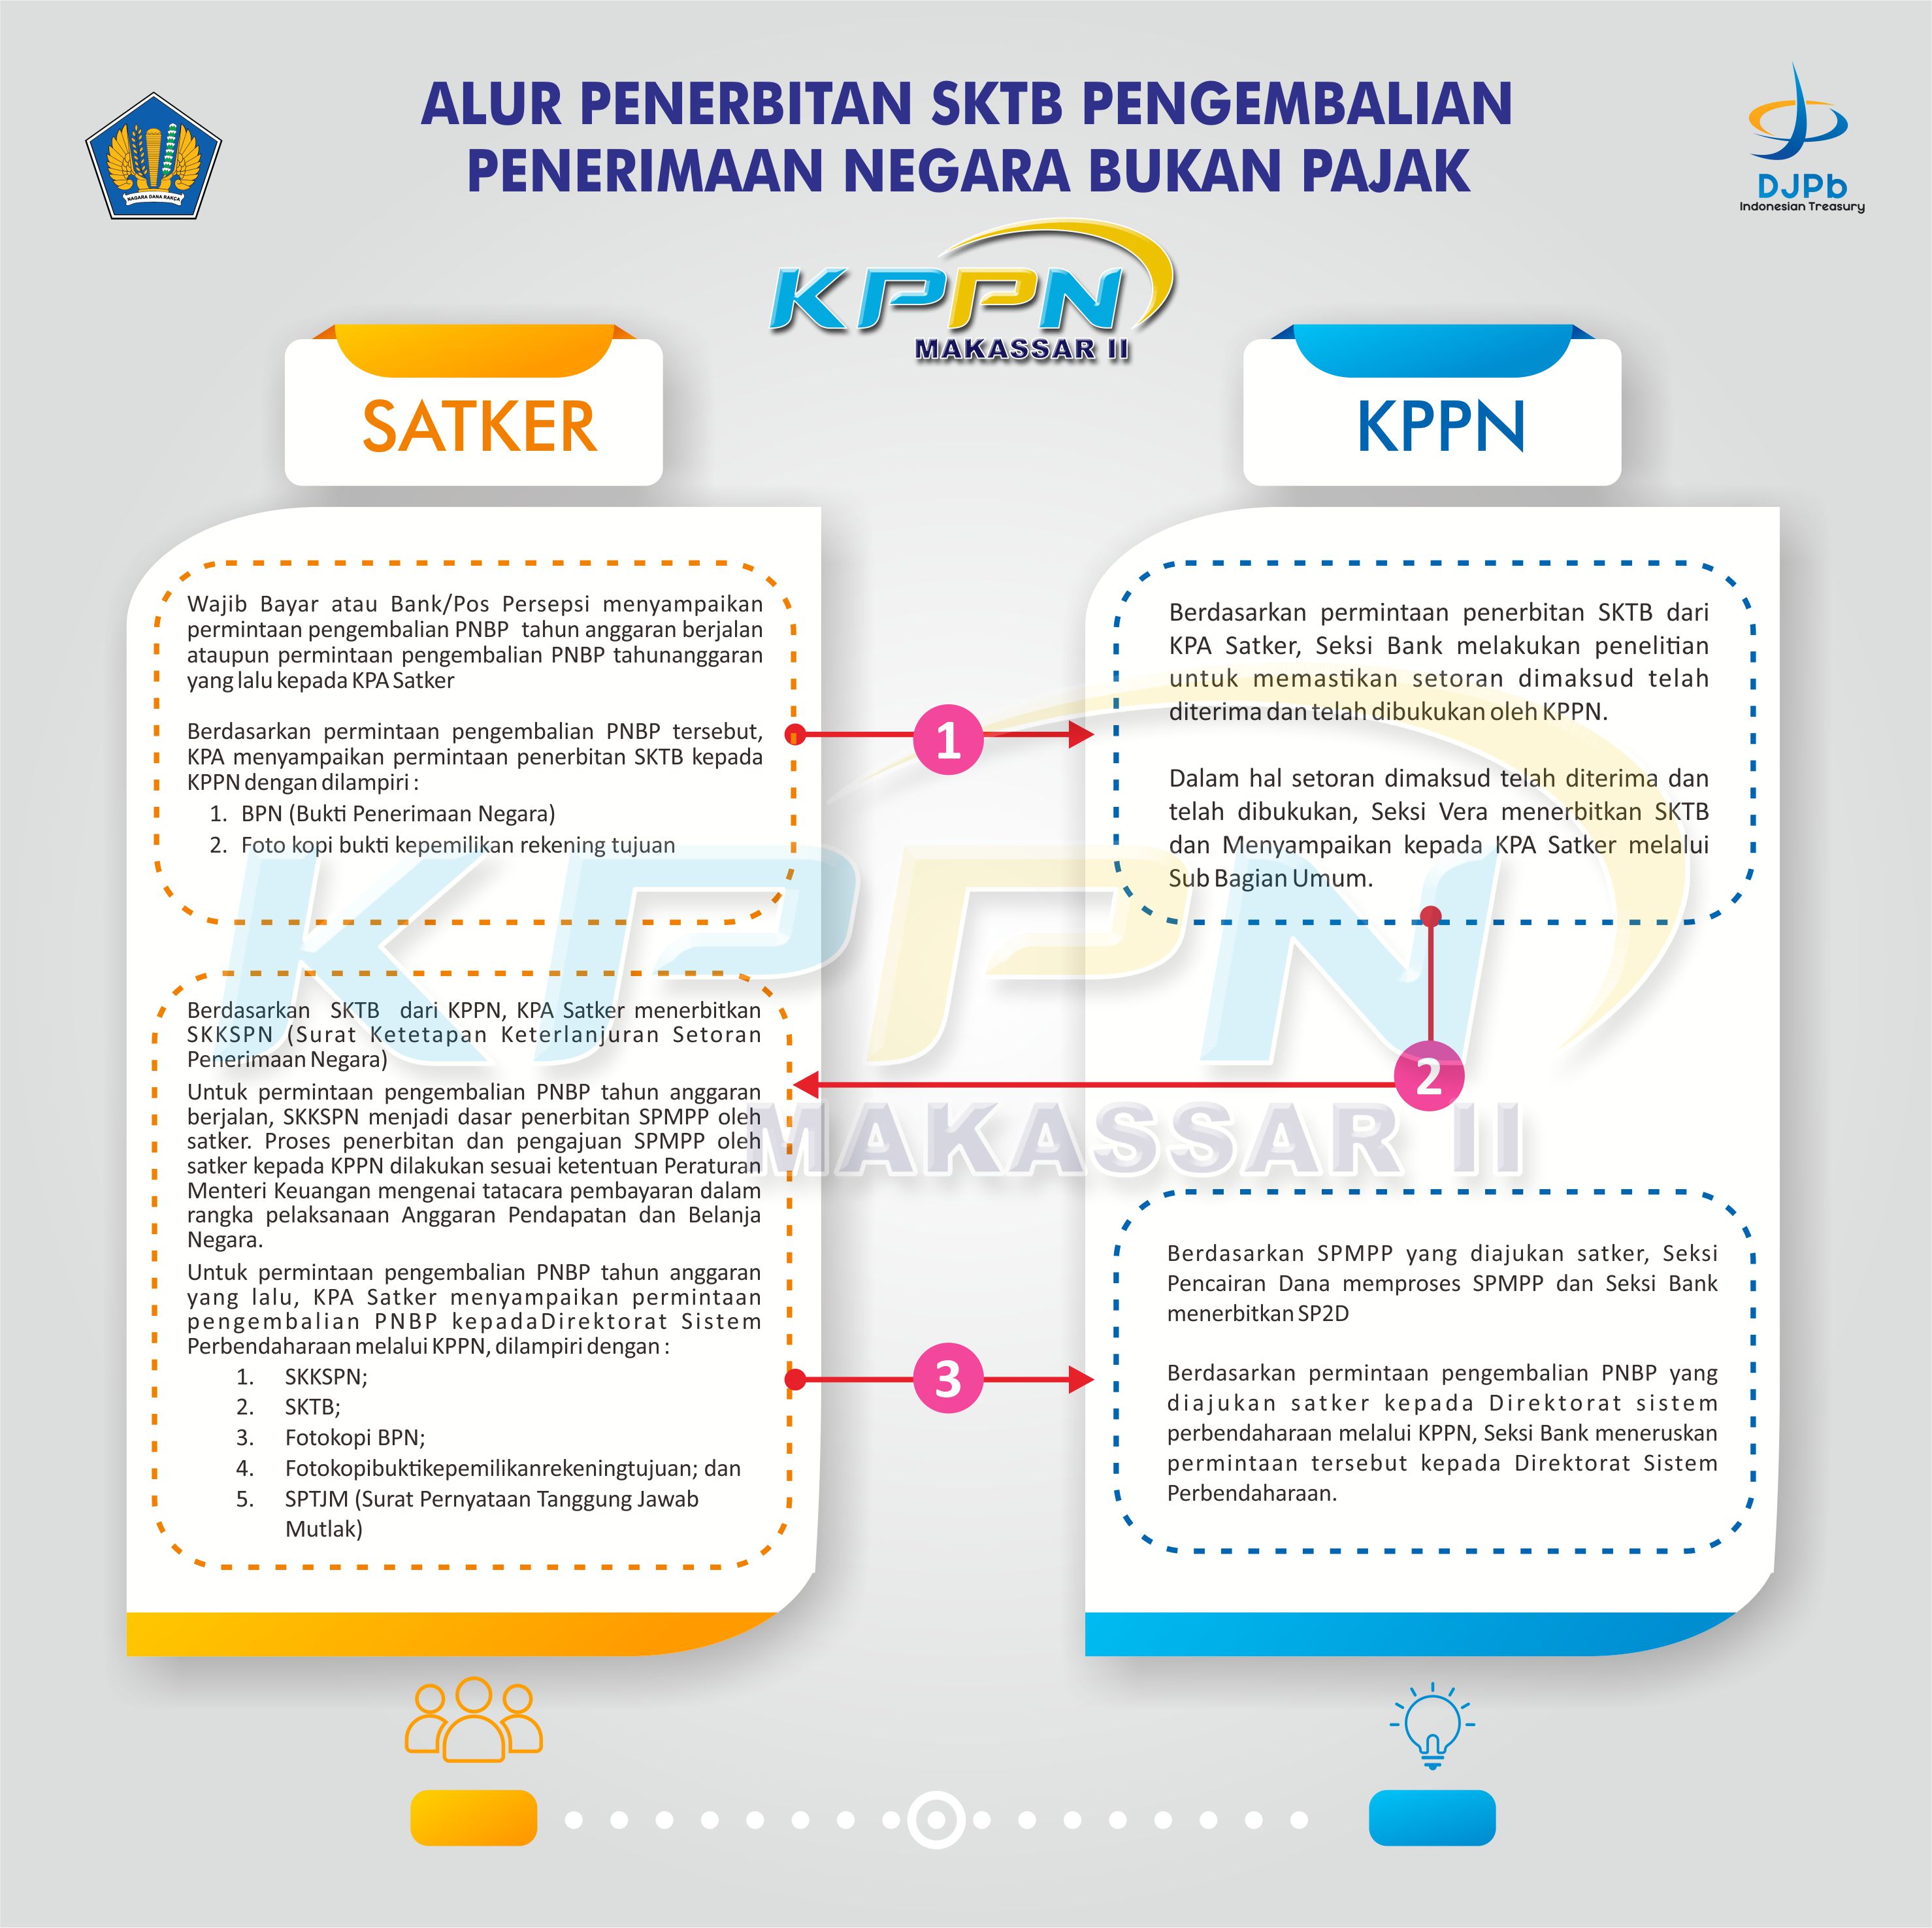 Alur Penerbitan SKTB Pengembalian Penerimaan Negara Bukan Pajak KPPN Makassar II